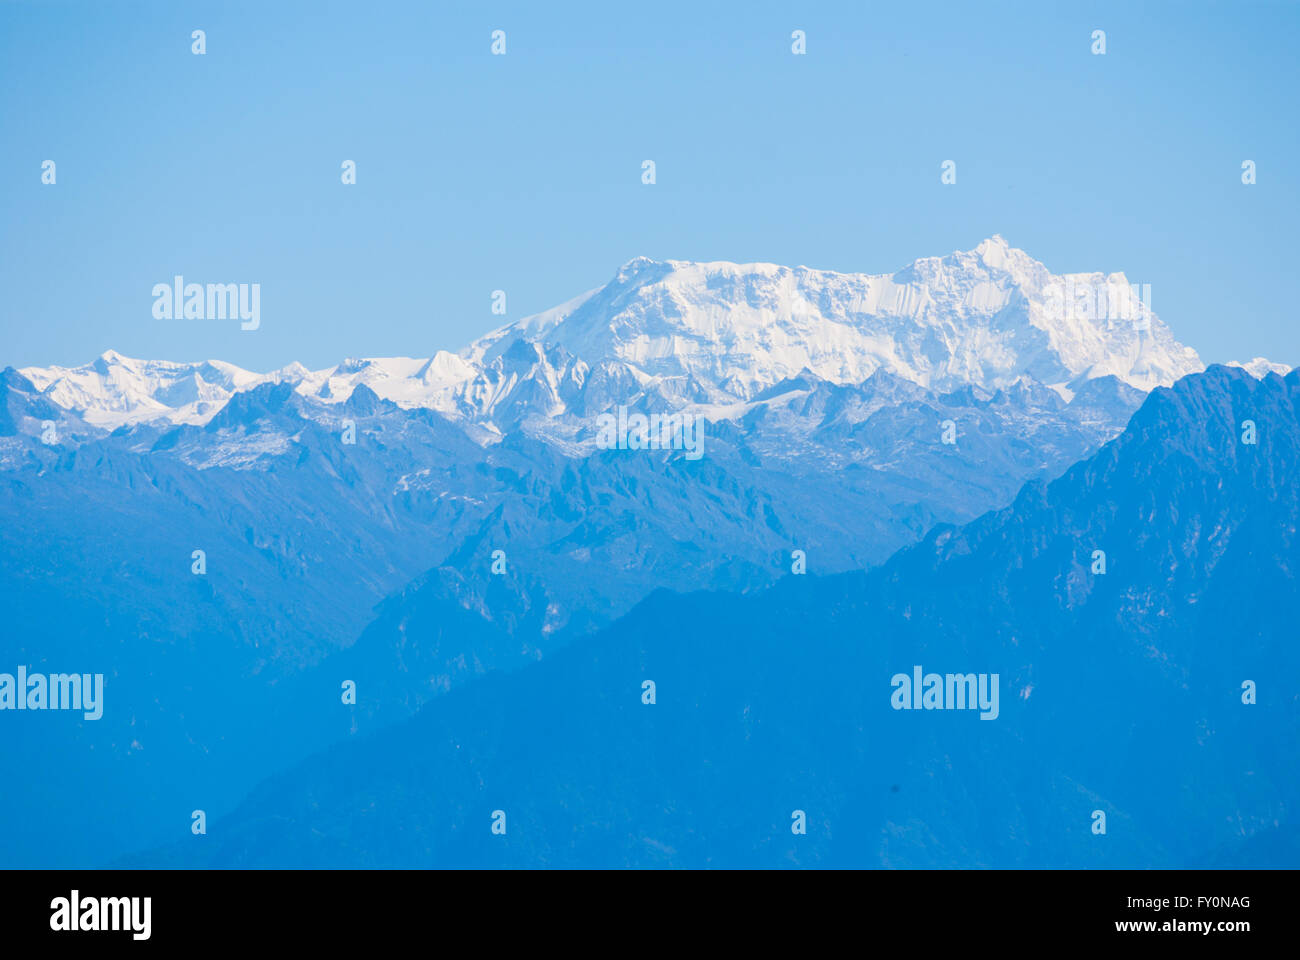 Vue de l'Himalayan peak (7541 Ganghar Gangkhar m) sur la frontière nord du Bhoutan de Dochu La, un col à 3140 m dans l'ouest du Bhoutan. Banque D'Images